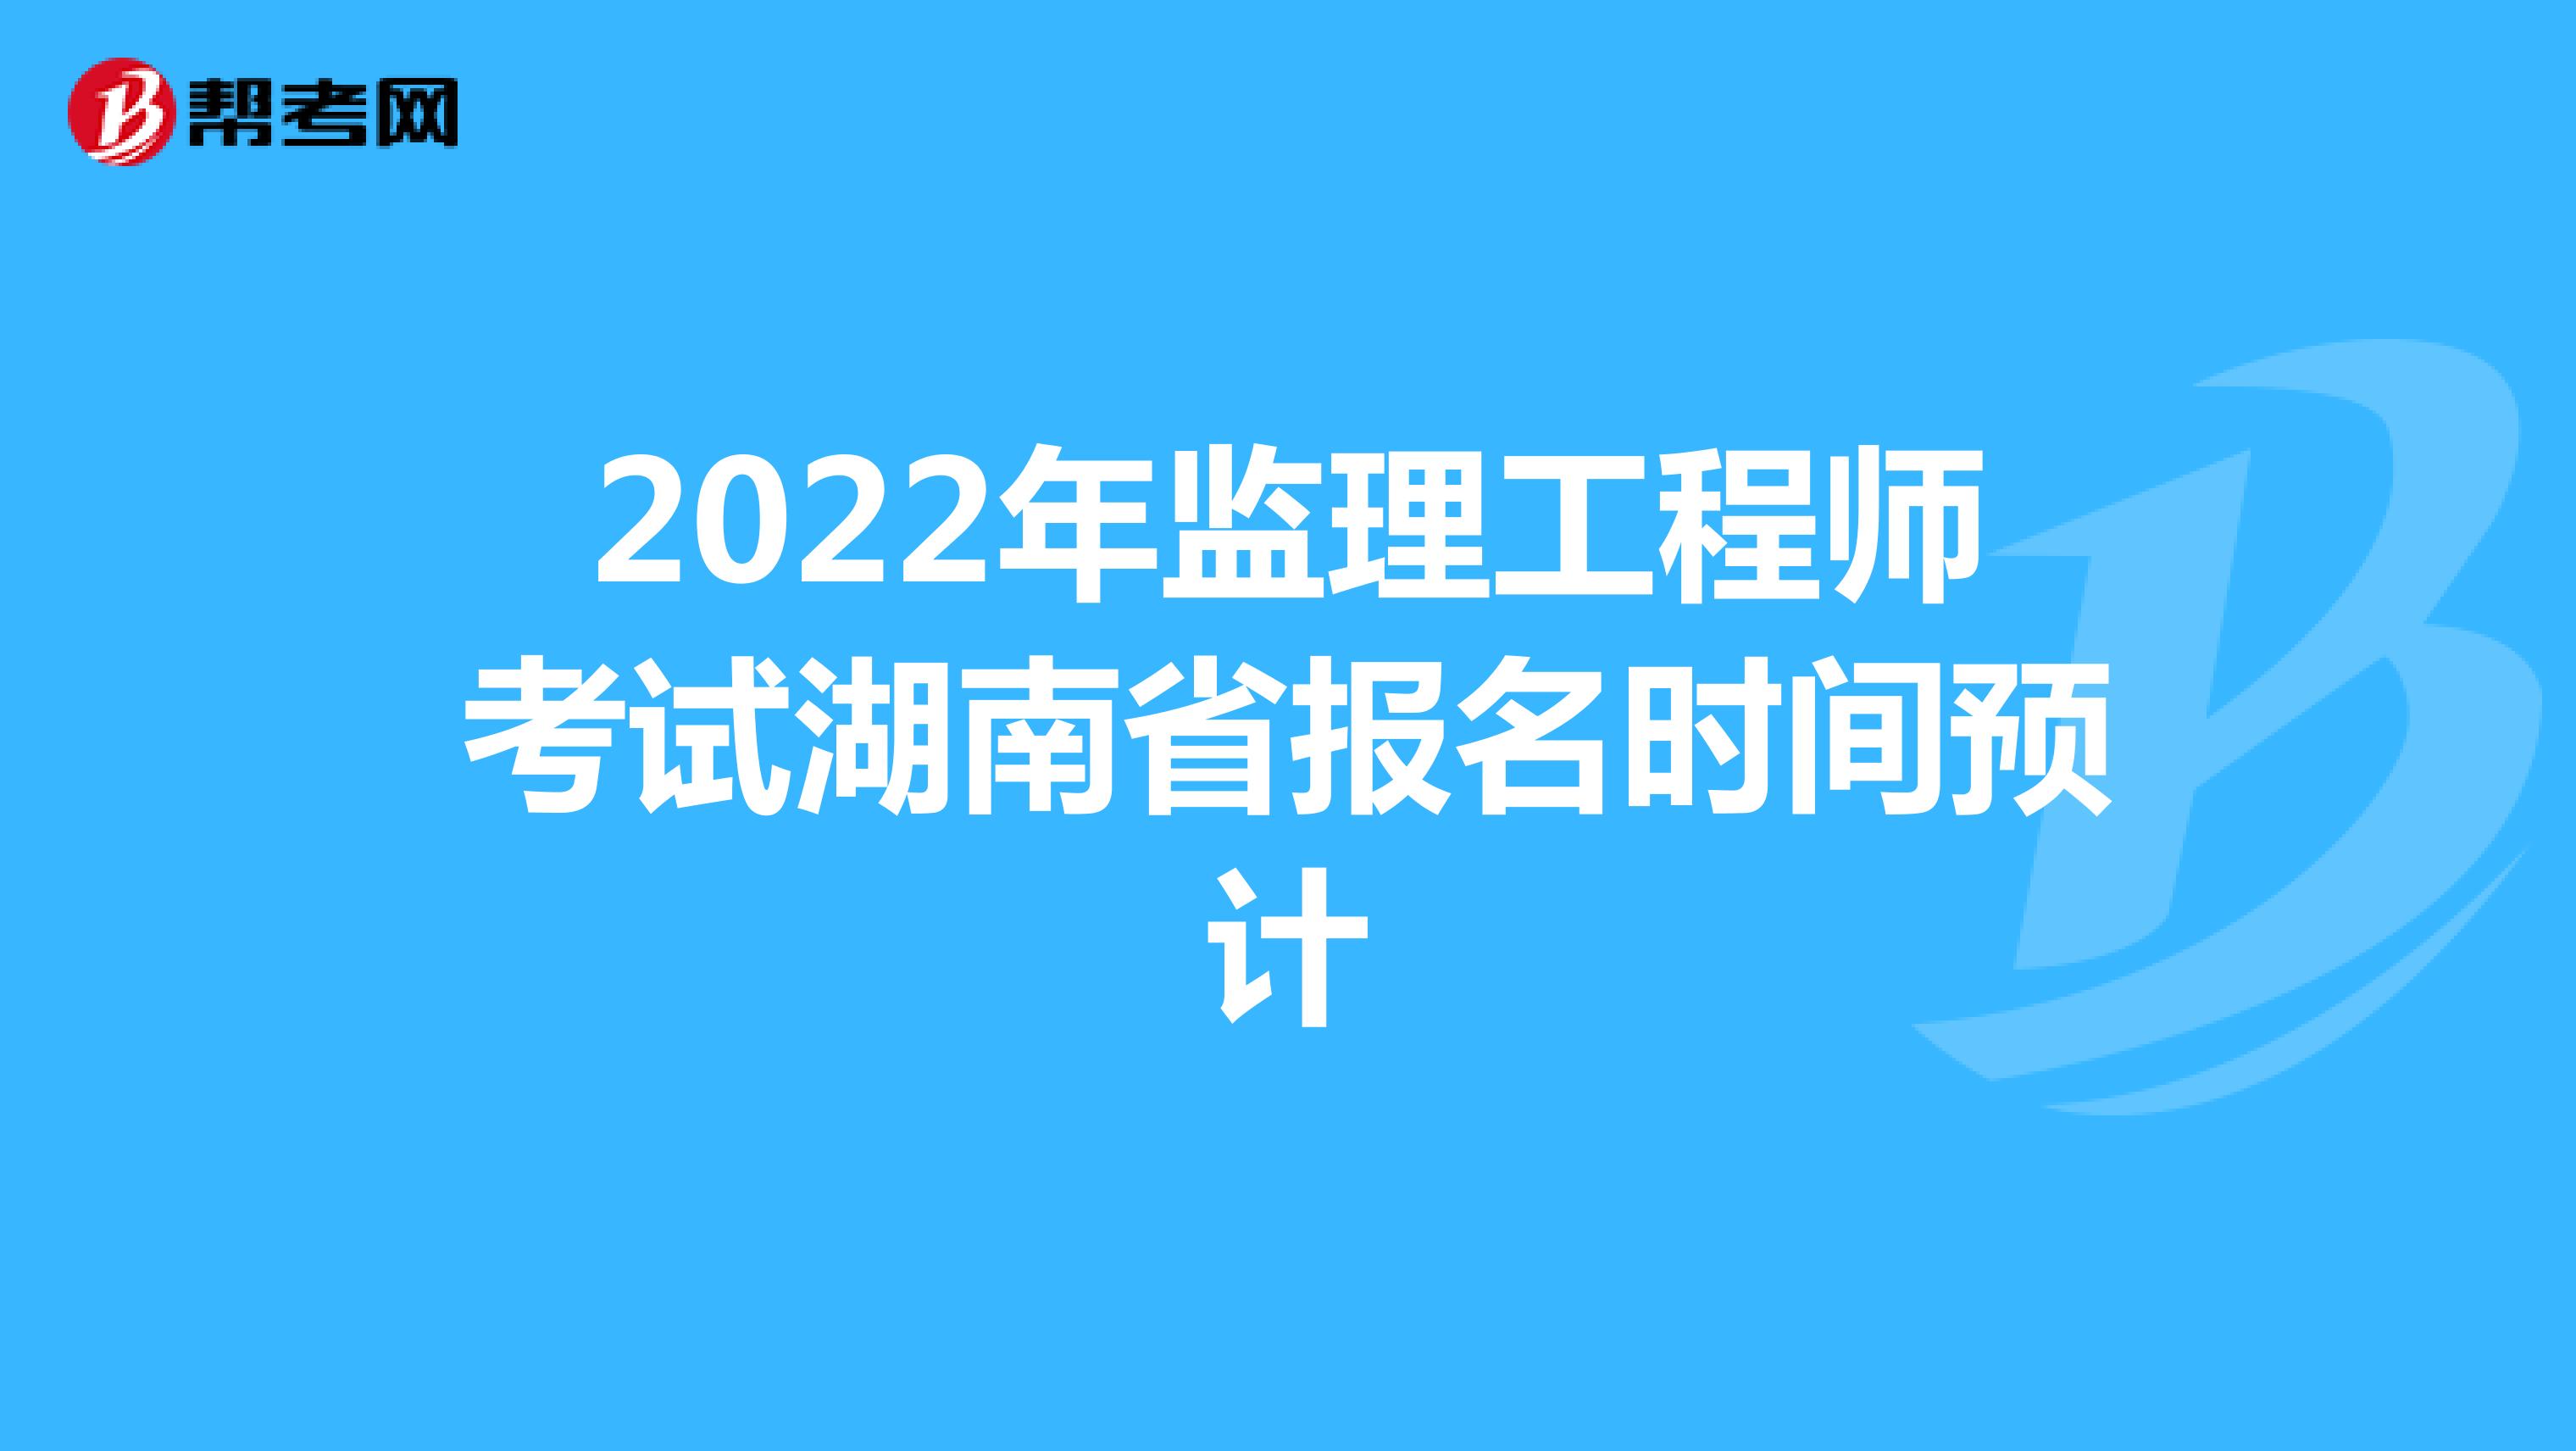 2022年监理工程师考试湖南省报名时间预计